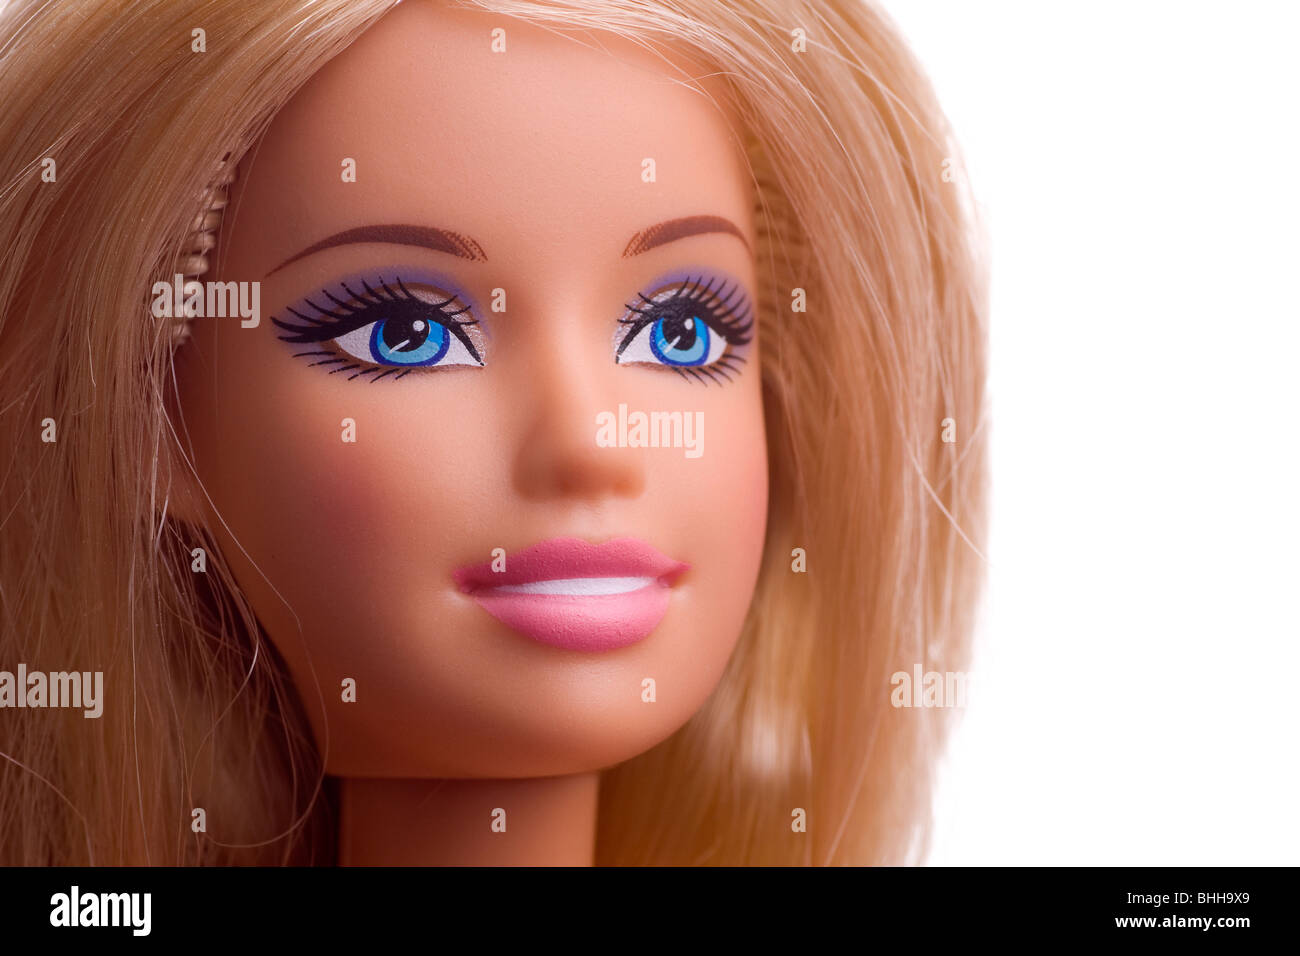 Nahaufnahme von einer Barbie Puppe Gesicht mit blonden Haaren & blaue Augen  blickte Stockfotografie - Alamy